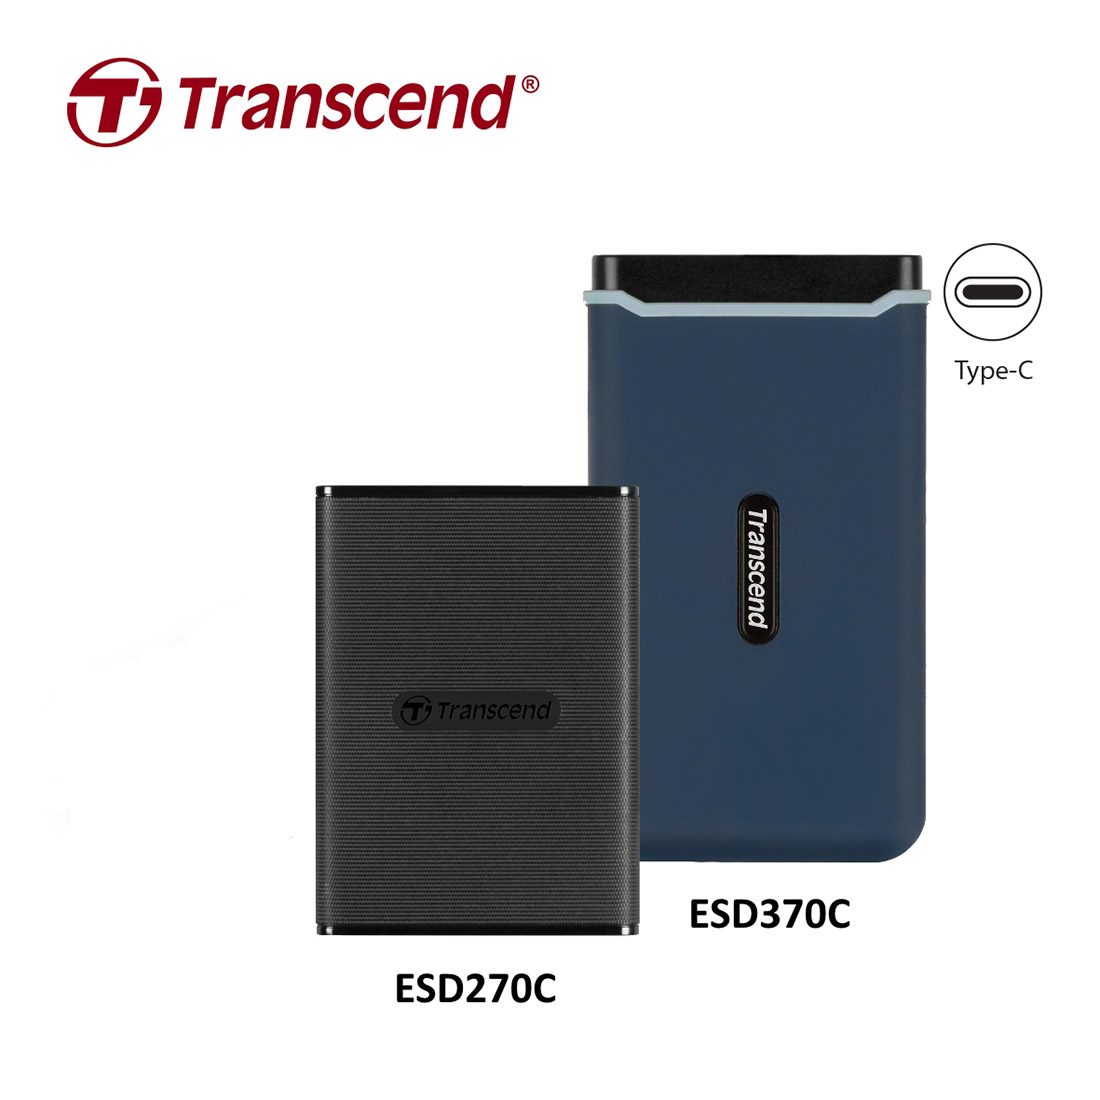 Transcend ESD270C и ESD370C: портативные SSD со скоростью до 1050 МБ/с